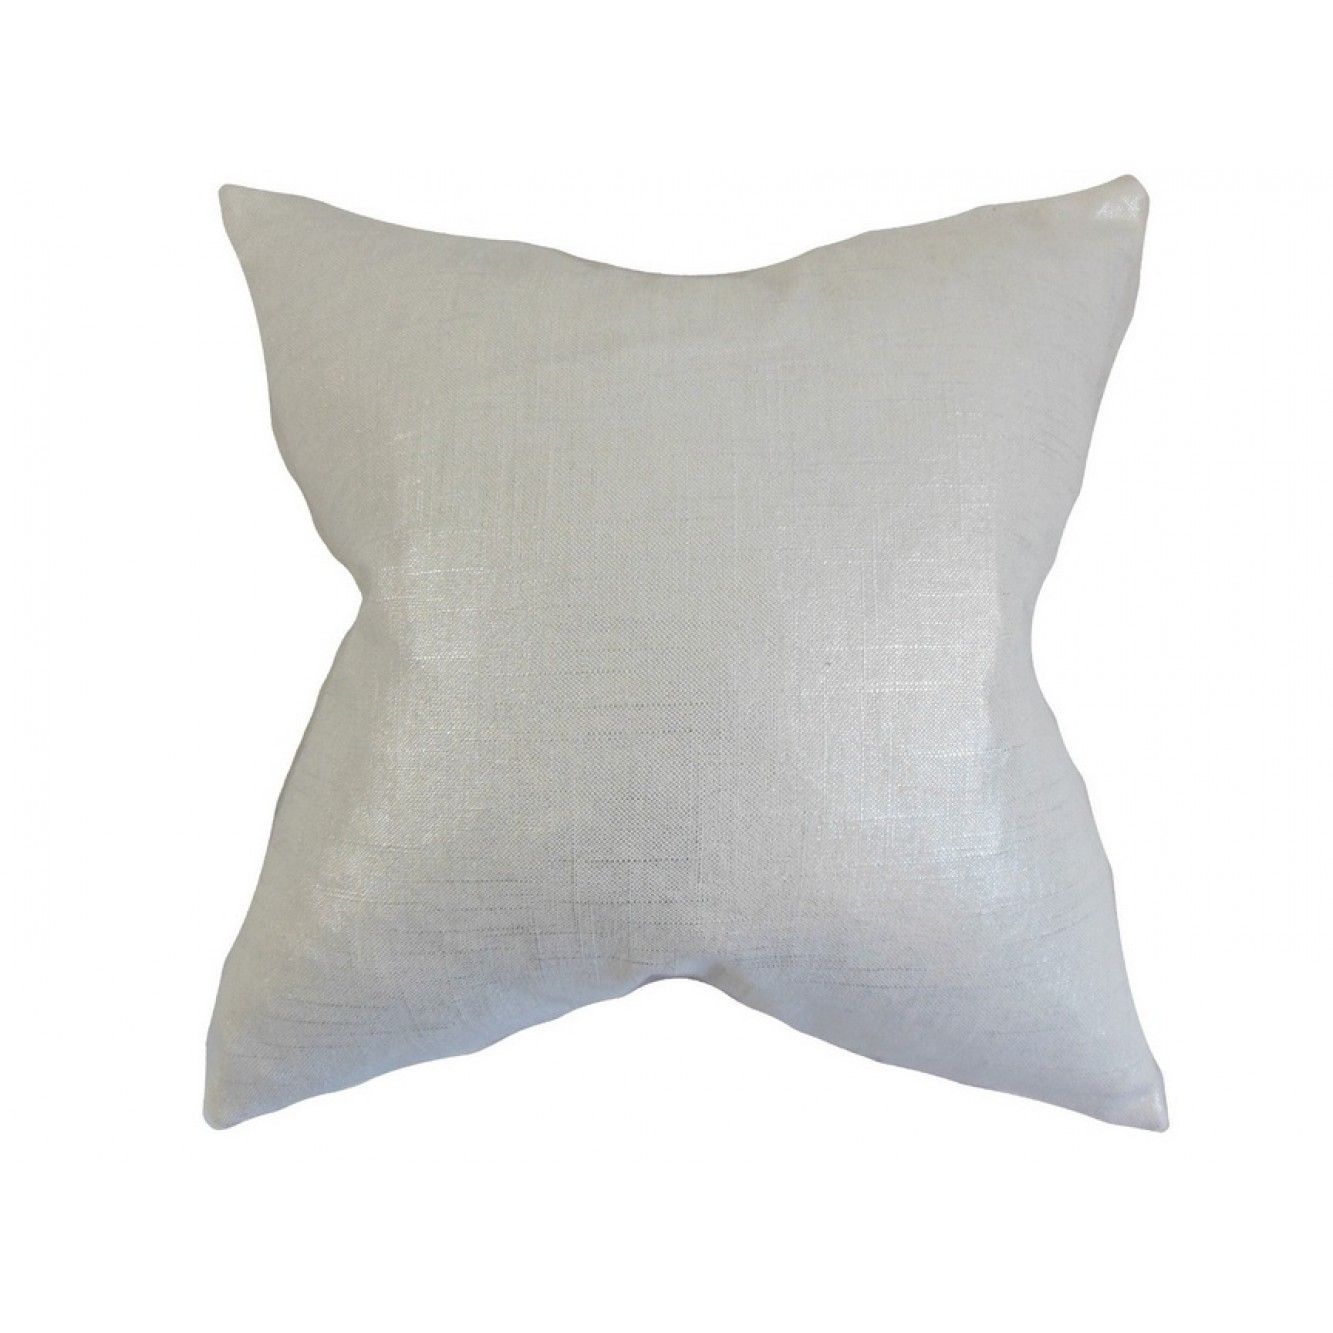 Berquist Solid Pillow - 20x20 - With high-fiber polyester pillow insert.